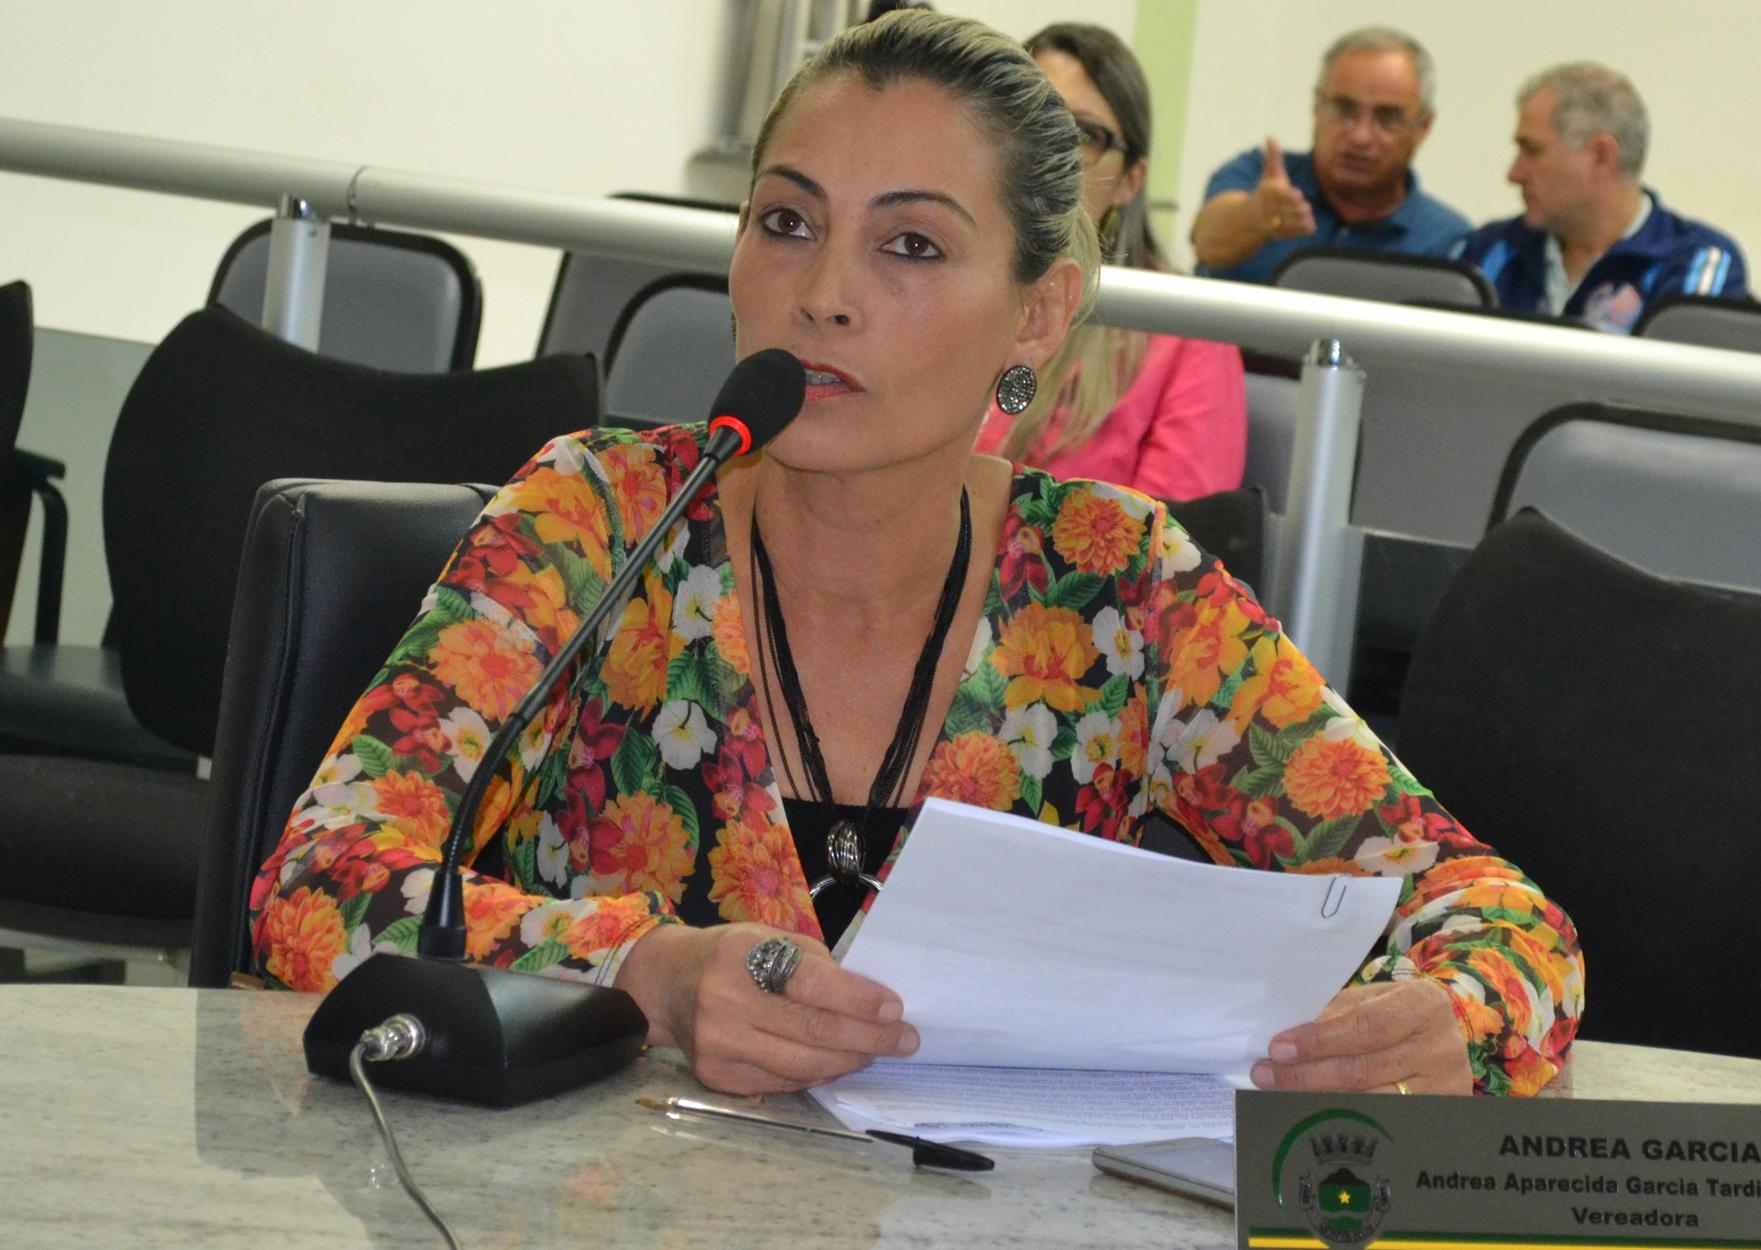 Implantação de Centro de Fisioterapia no Jd. Paulista é reivindicada por Andrea Garcia